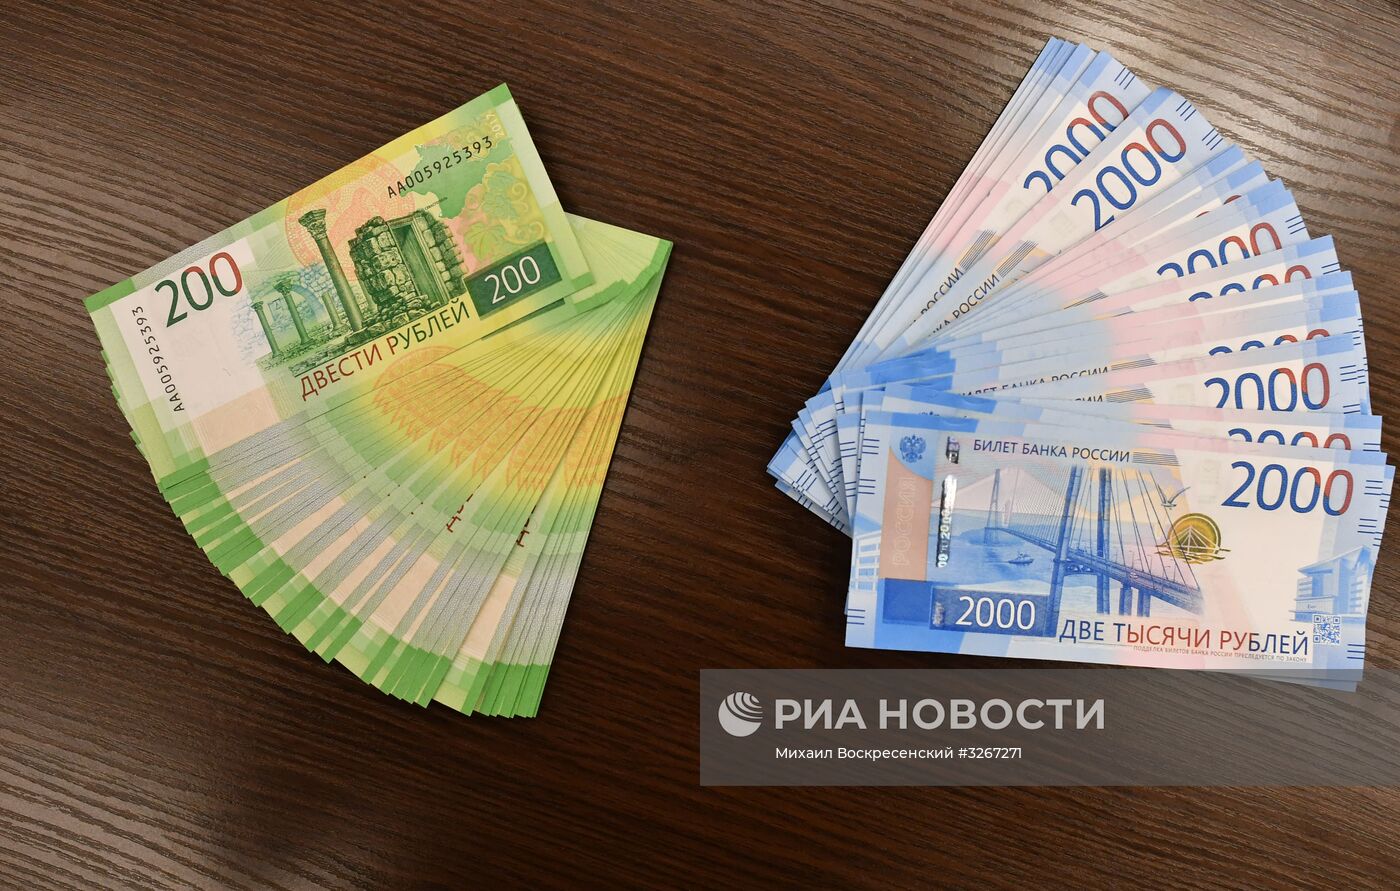 Презентация устройств самообслуживания с новыми купюрами номиналом 200 и 2000 рублей